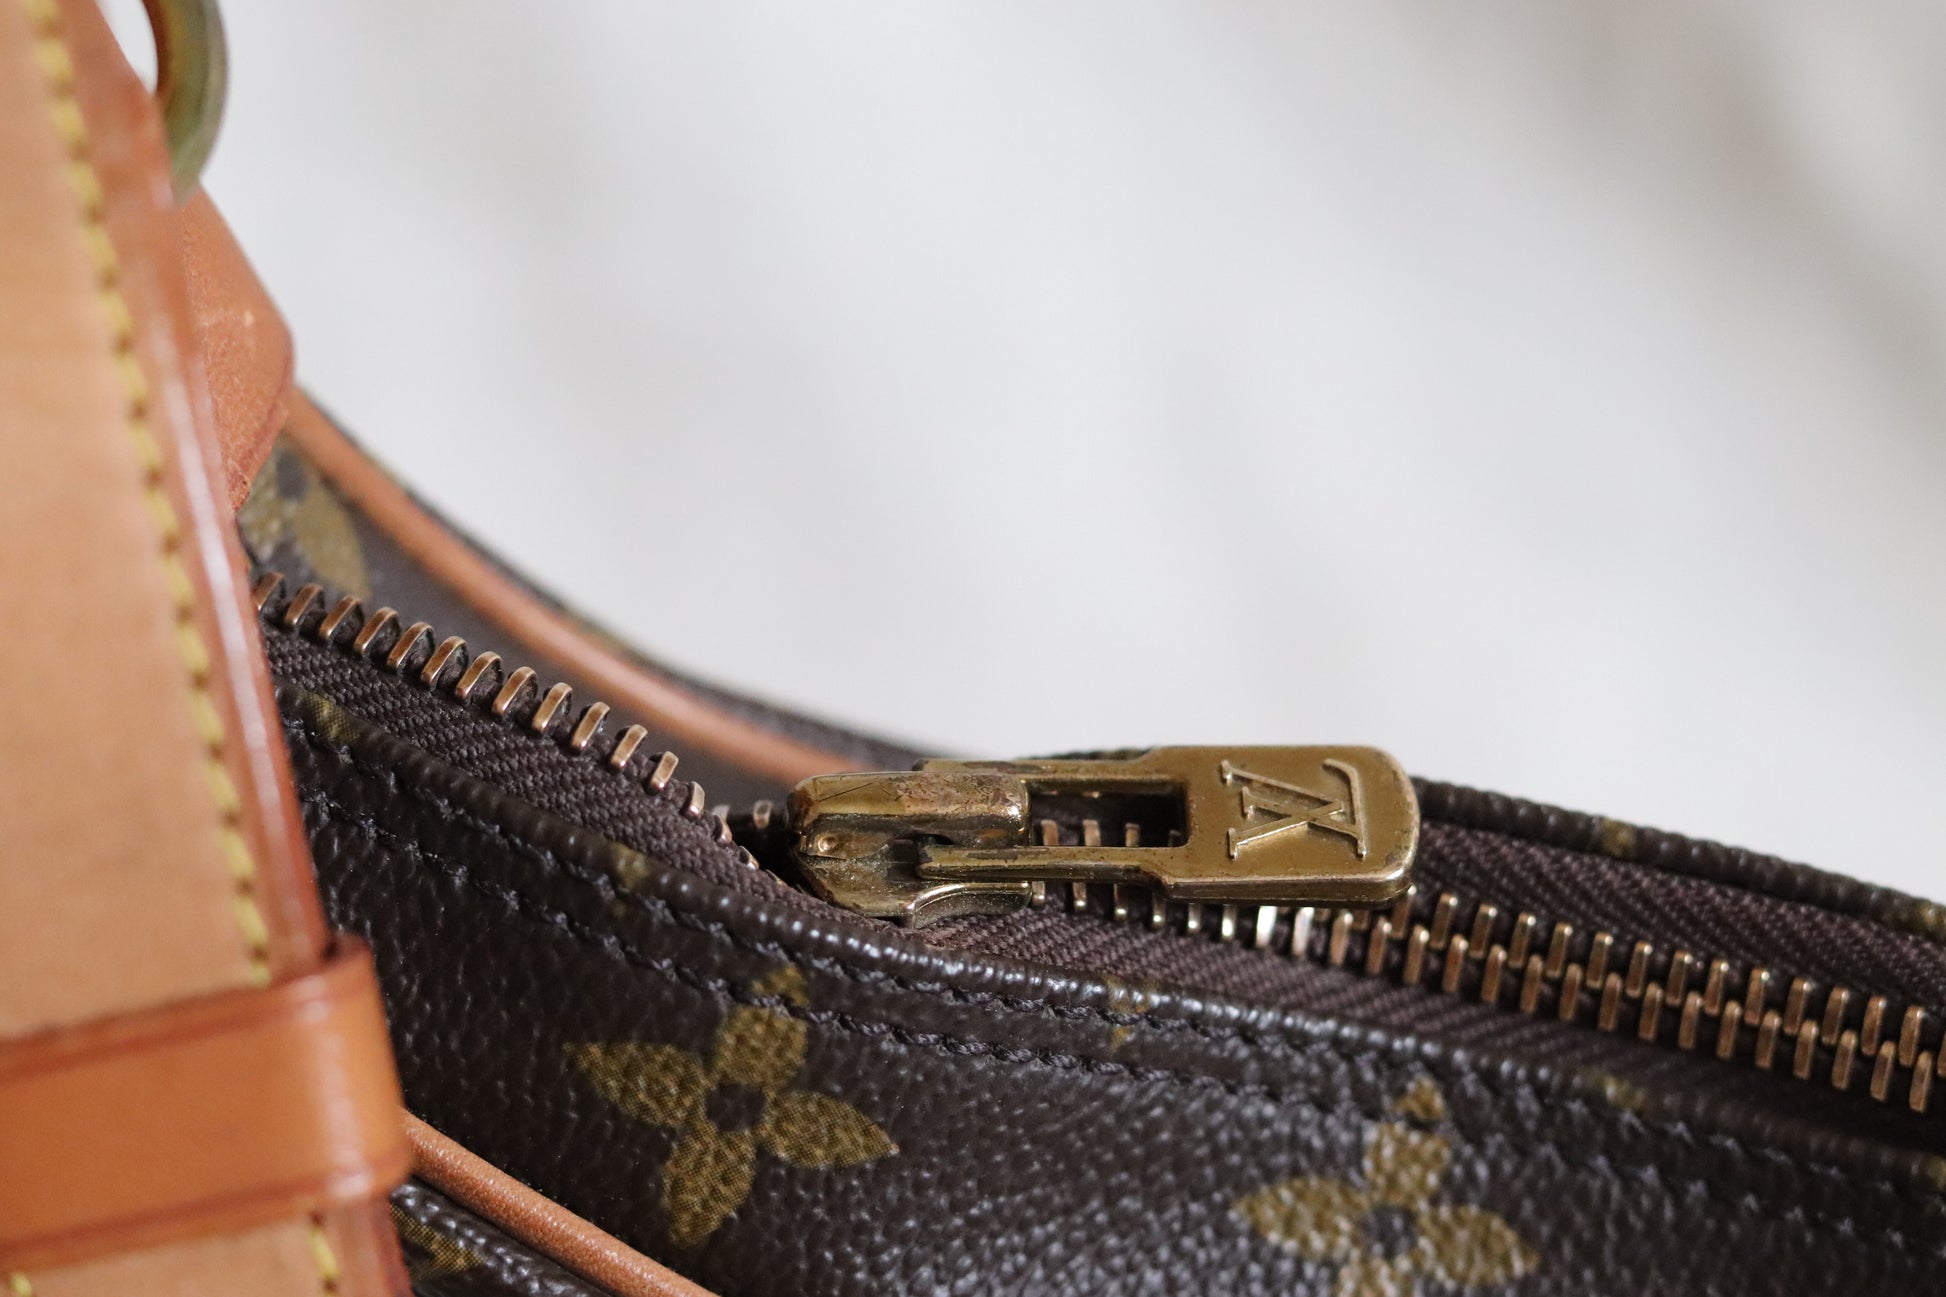 Louis Vuitton Boulogne Handbag 361635